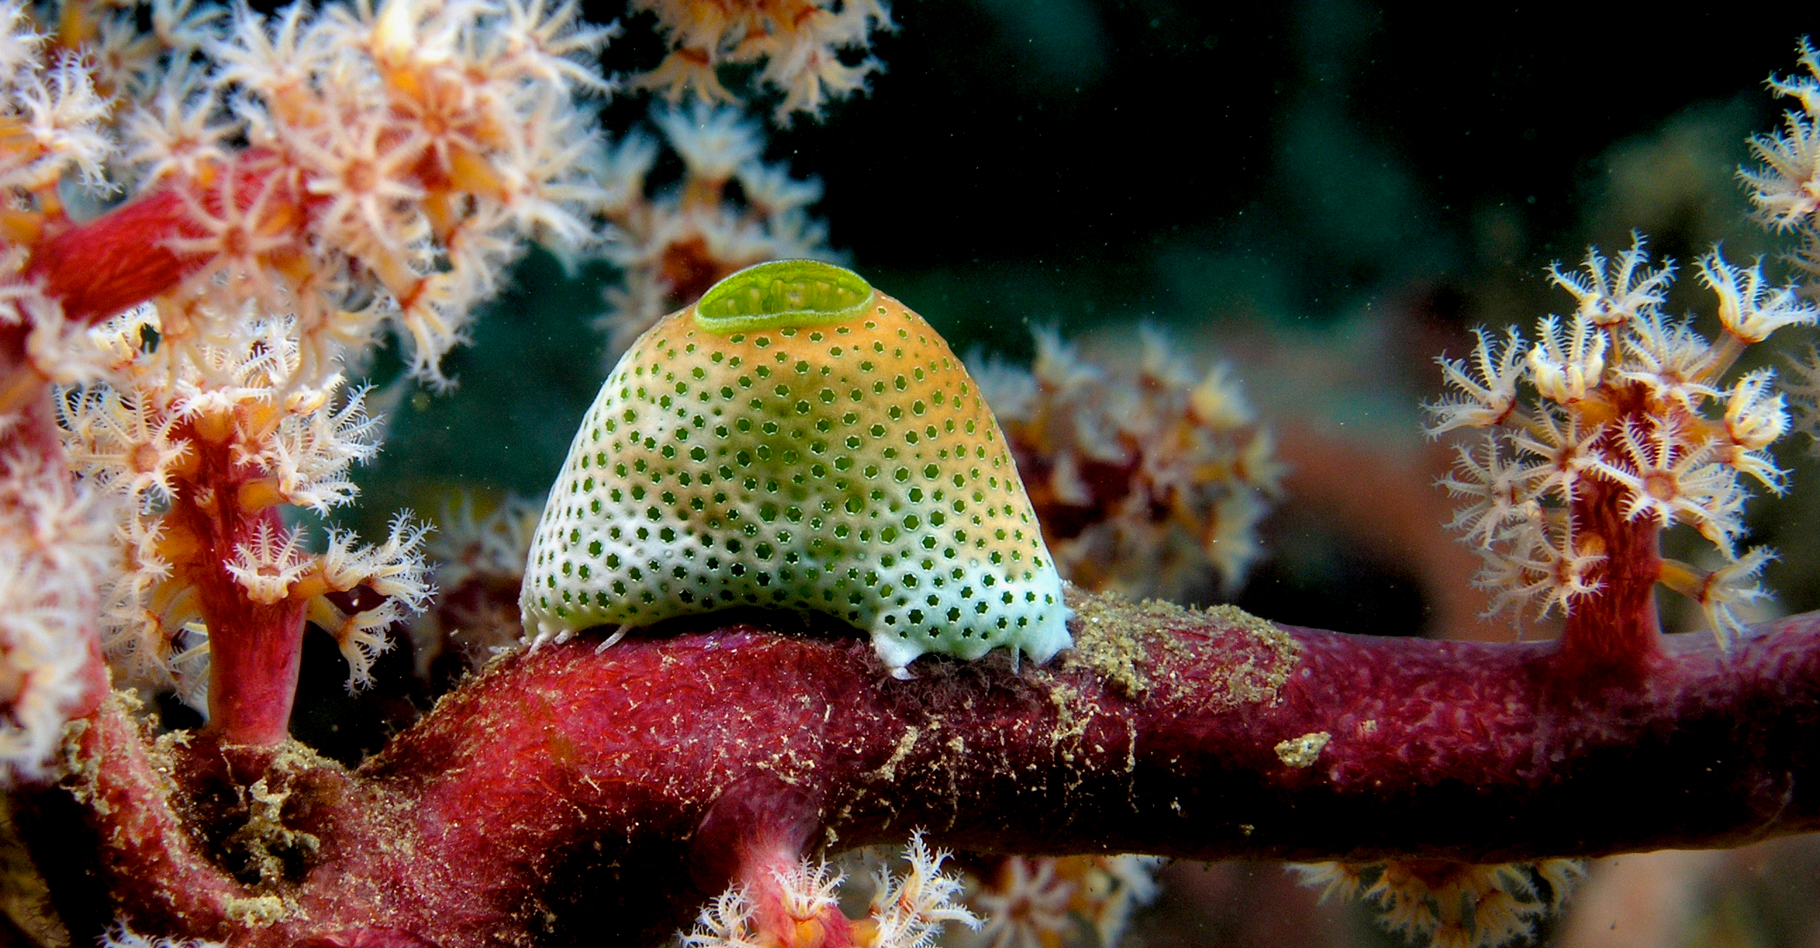 Atriolum robustum (Ascidie) sur un arbre souple&nbsp;constitué d'un ou plusieurs coraux. © Nick Hobgood - CC BY-NC 3.0